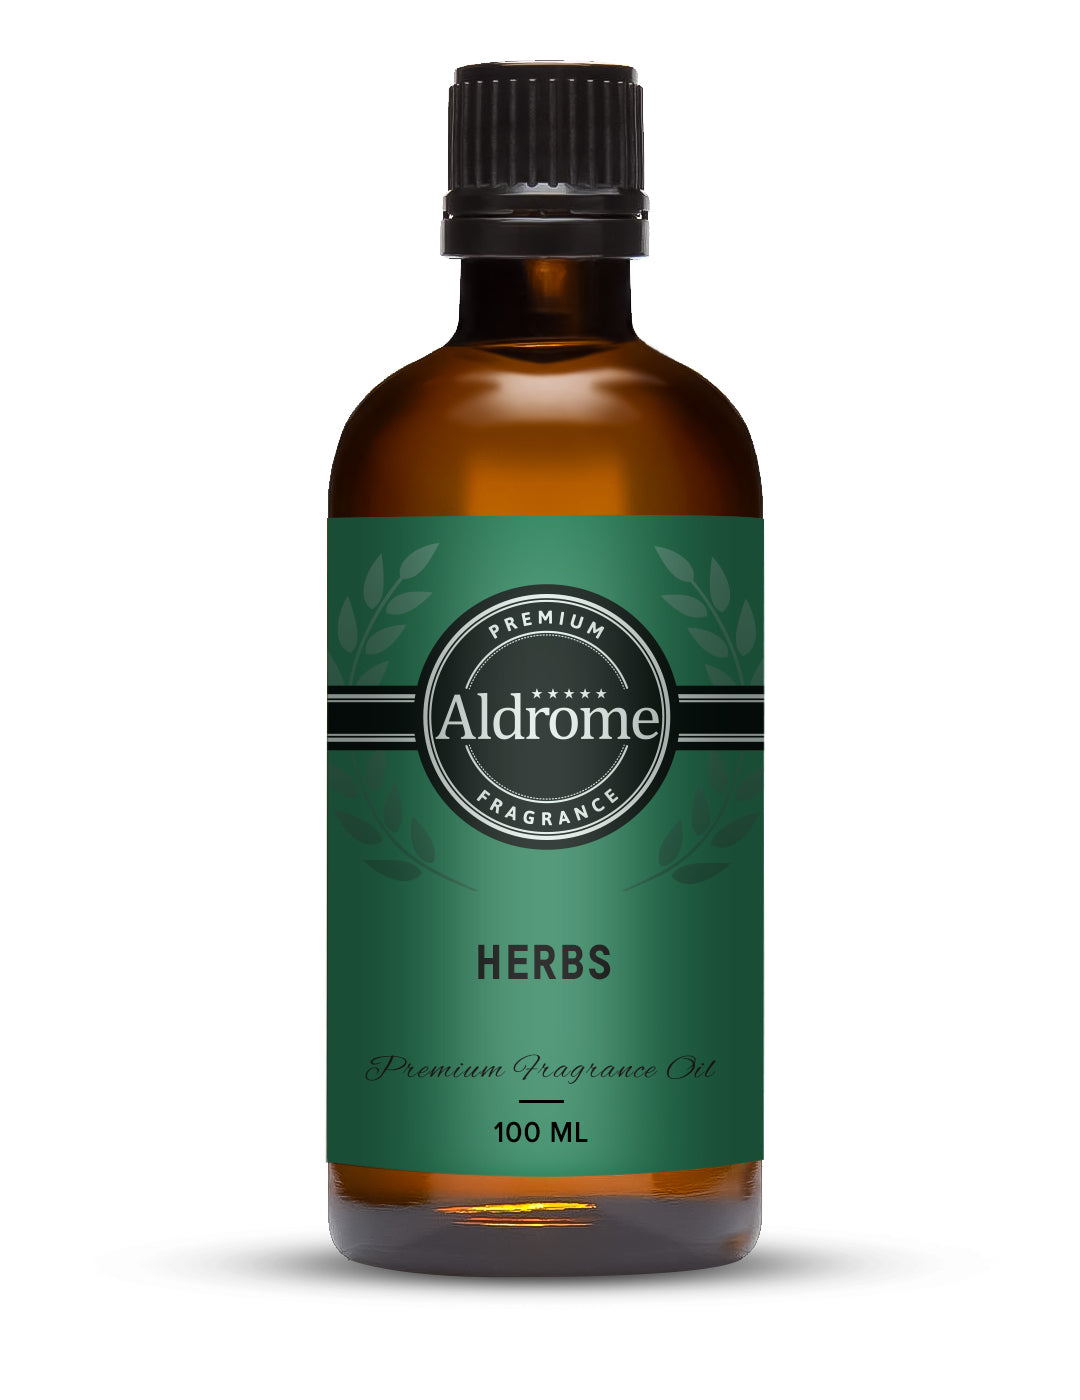 Buy Herbs Fragrance Oil - 100ml | Aldrome Premium Fragrance Oil